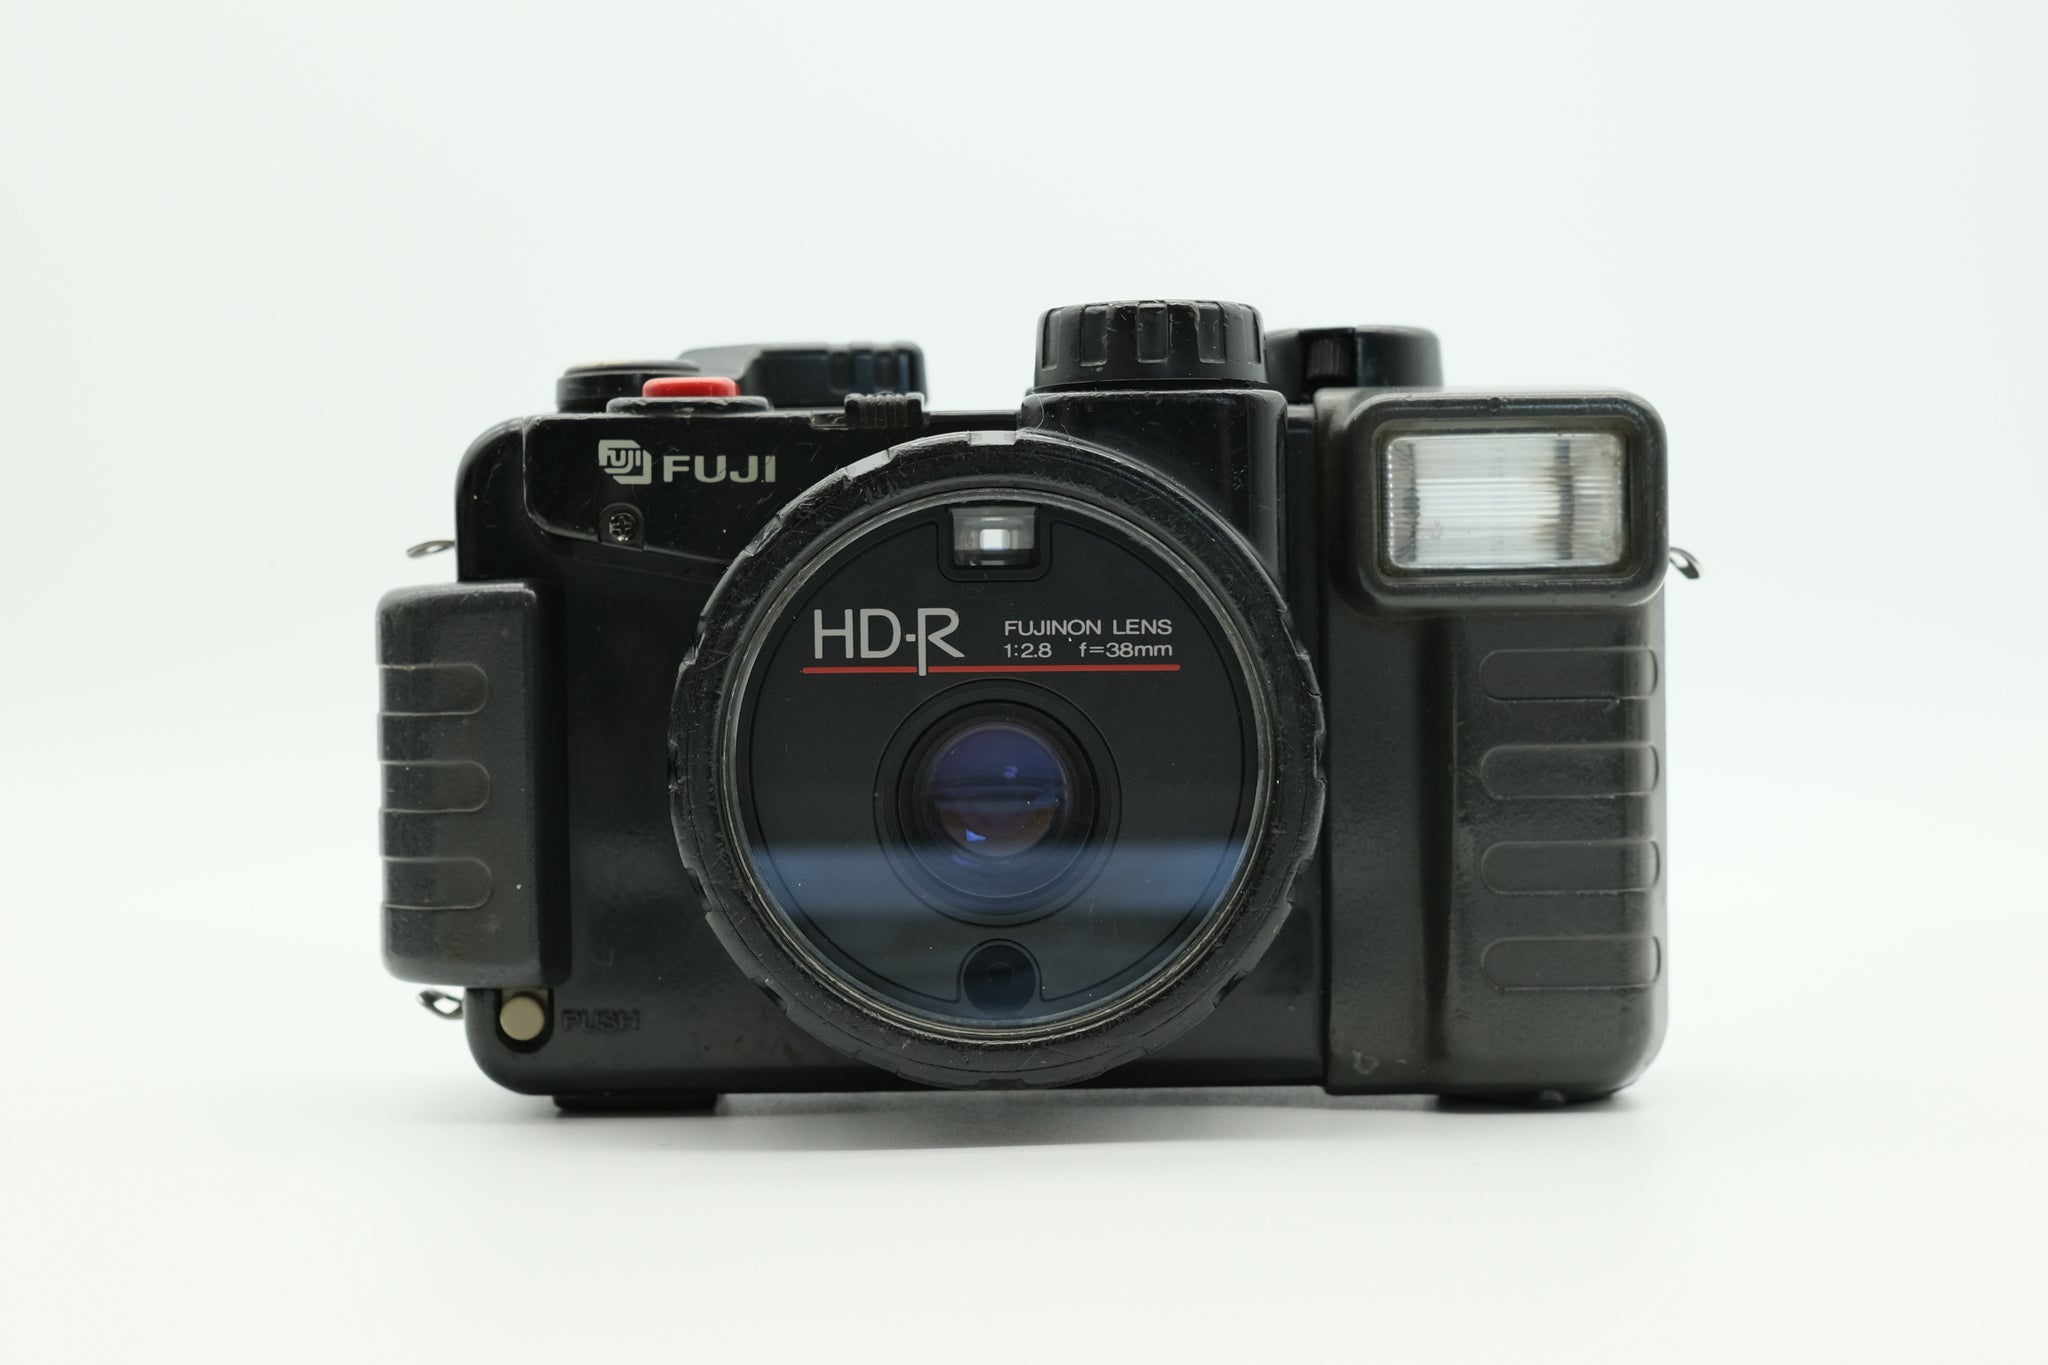 Fuji HD-R - Average Condition